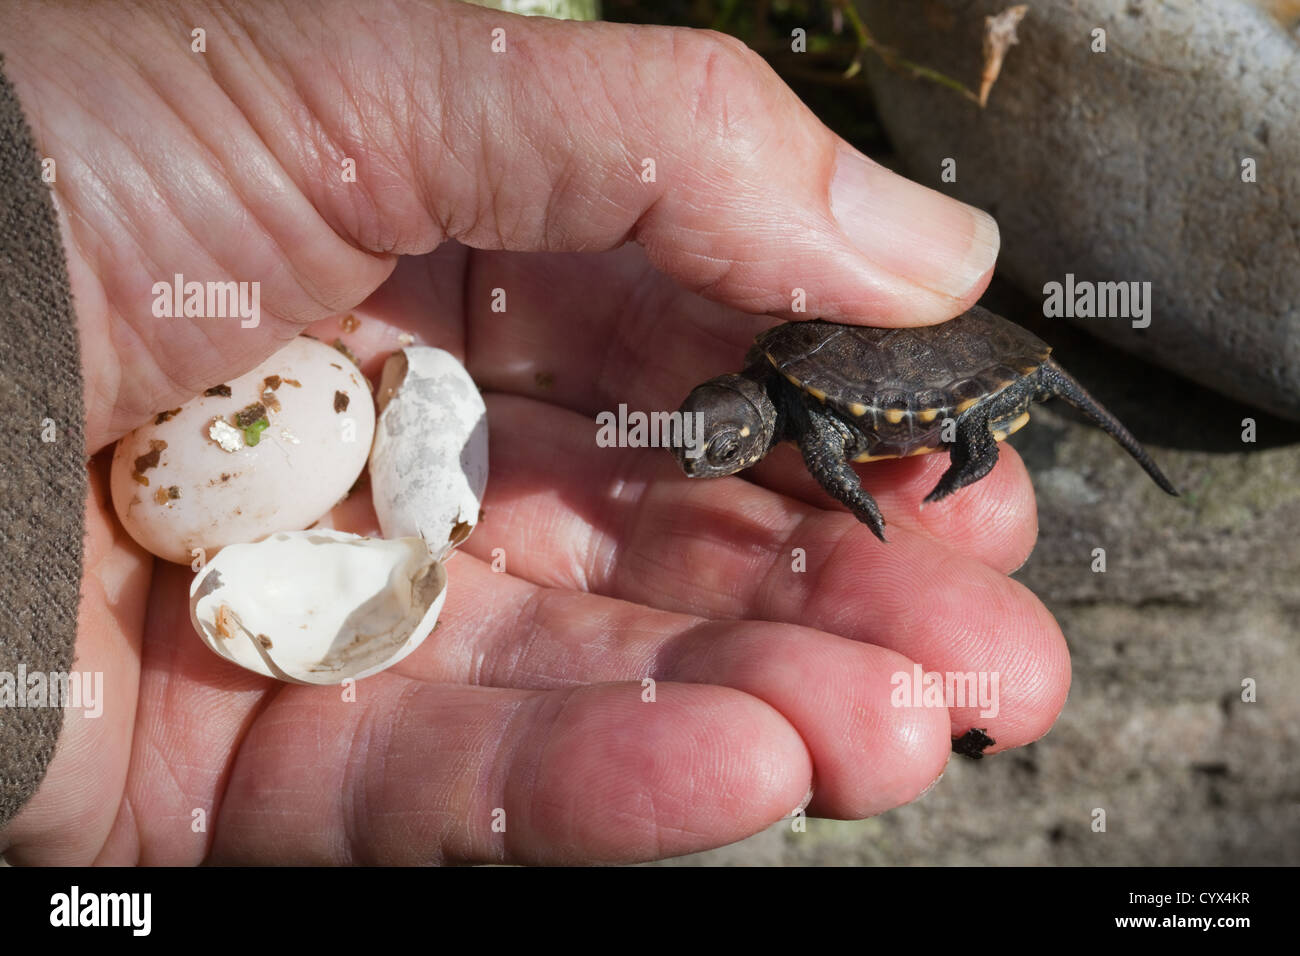 La tortue cistude Emys orbicularis.Hatchling tenue à la main avec un oeuf non éclos et des vestiges de ce shell l'éclosion. Élevés en captivité. Banque D'Images